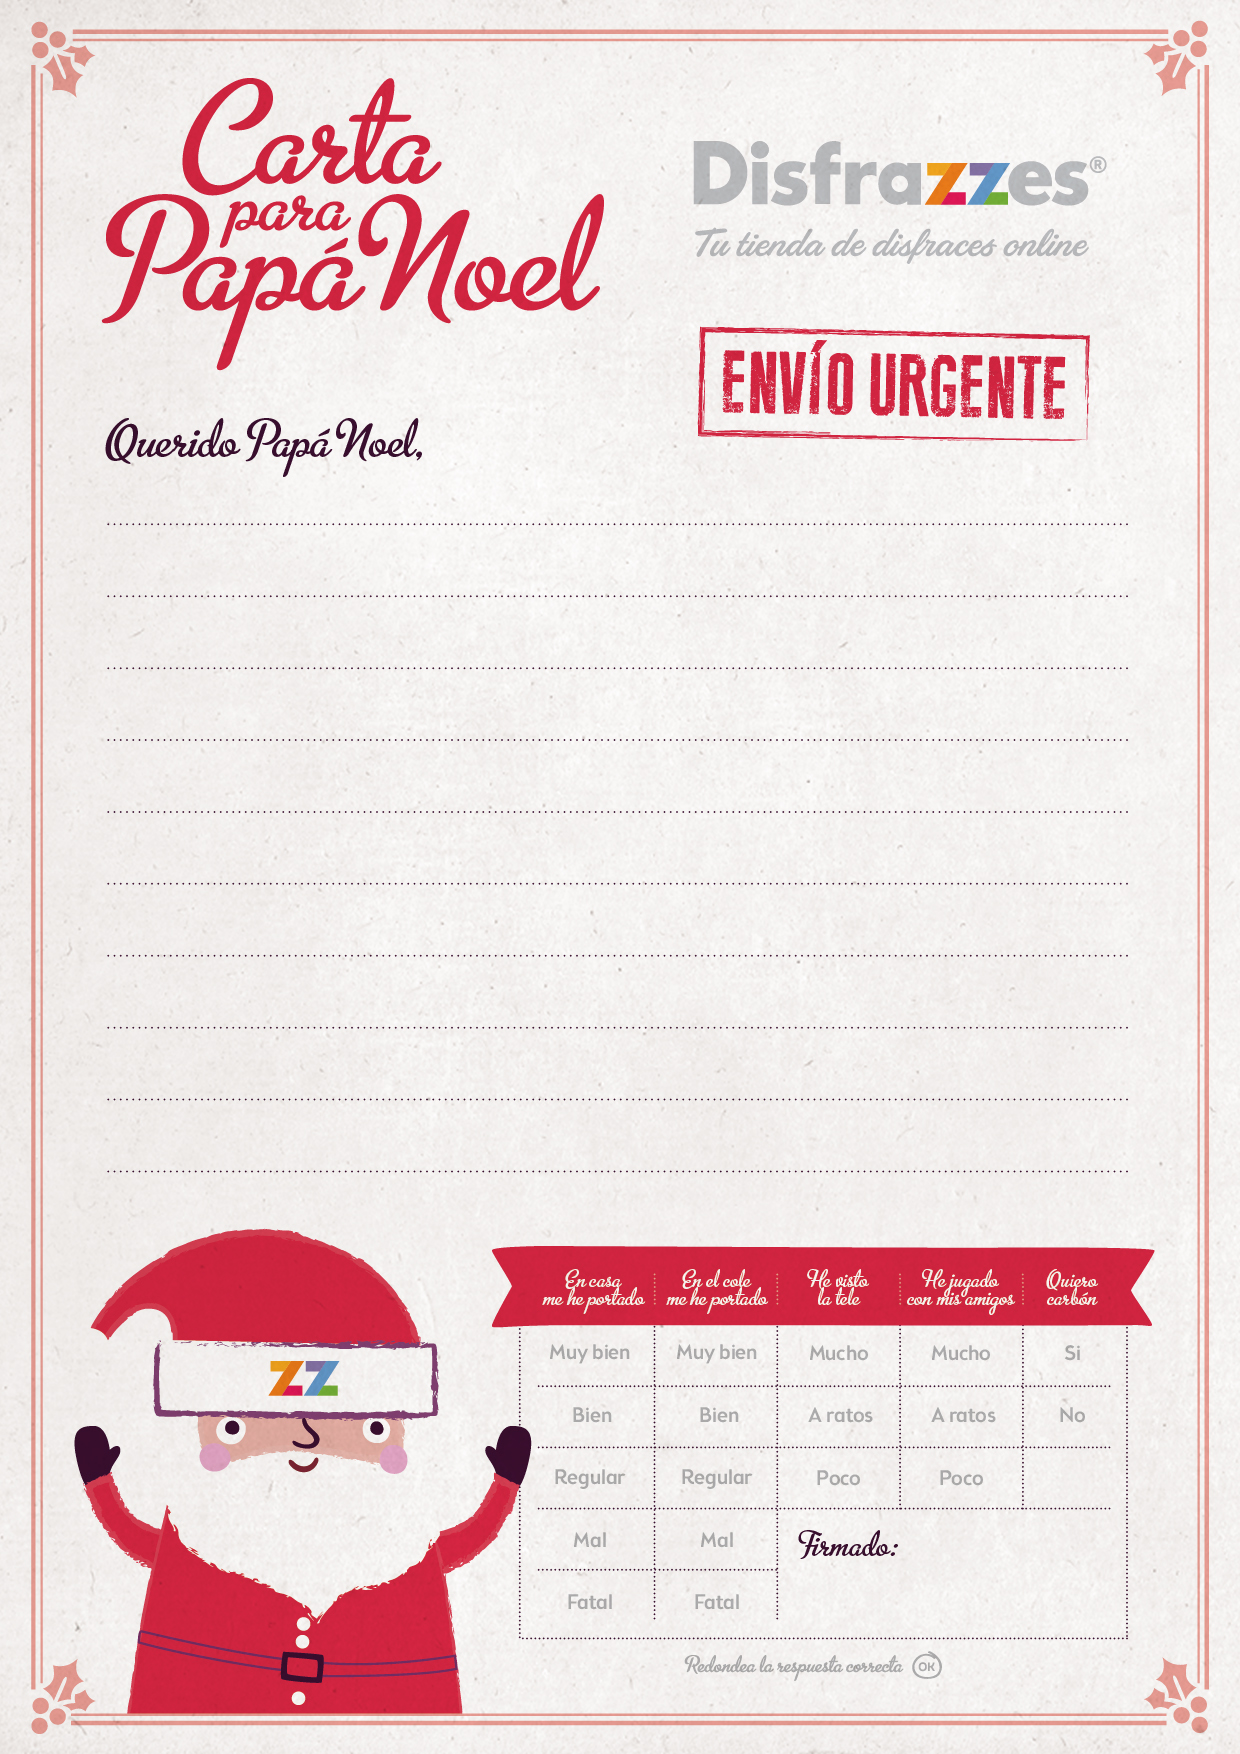 Carta Online Papa Noel carta a papa noel - Blog de Disfrazzes